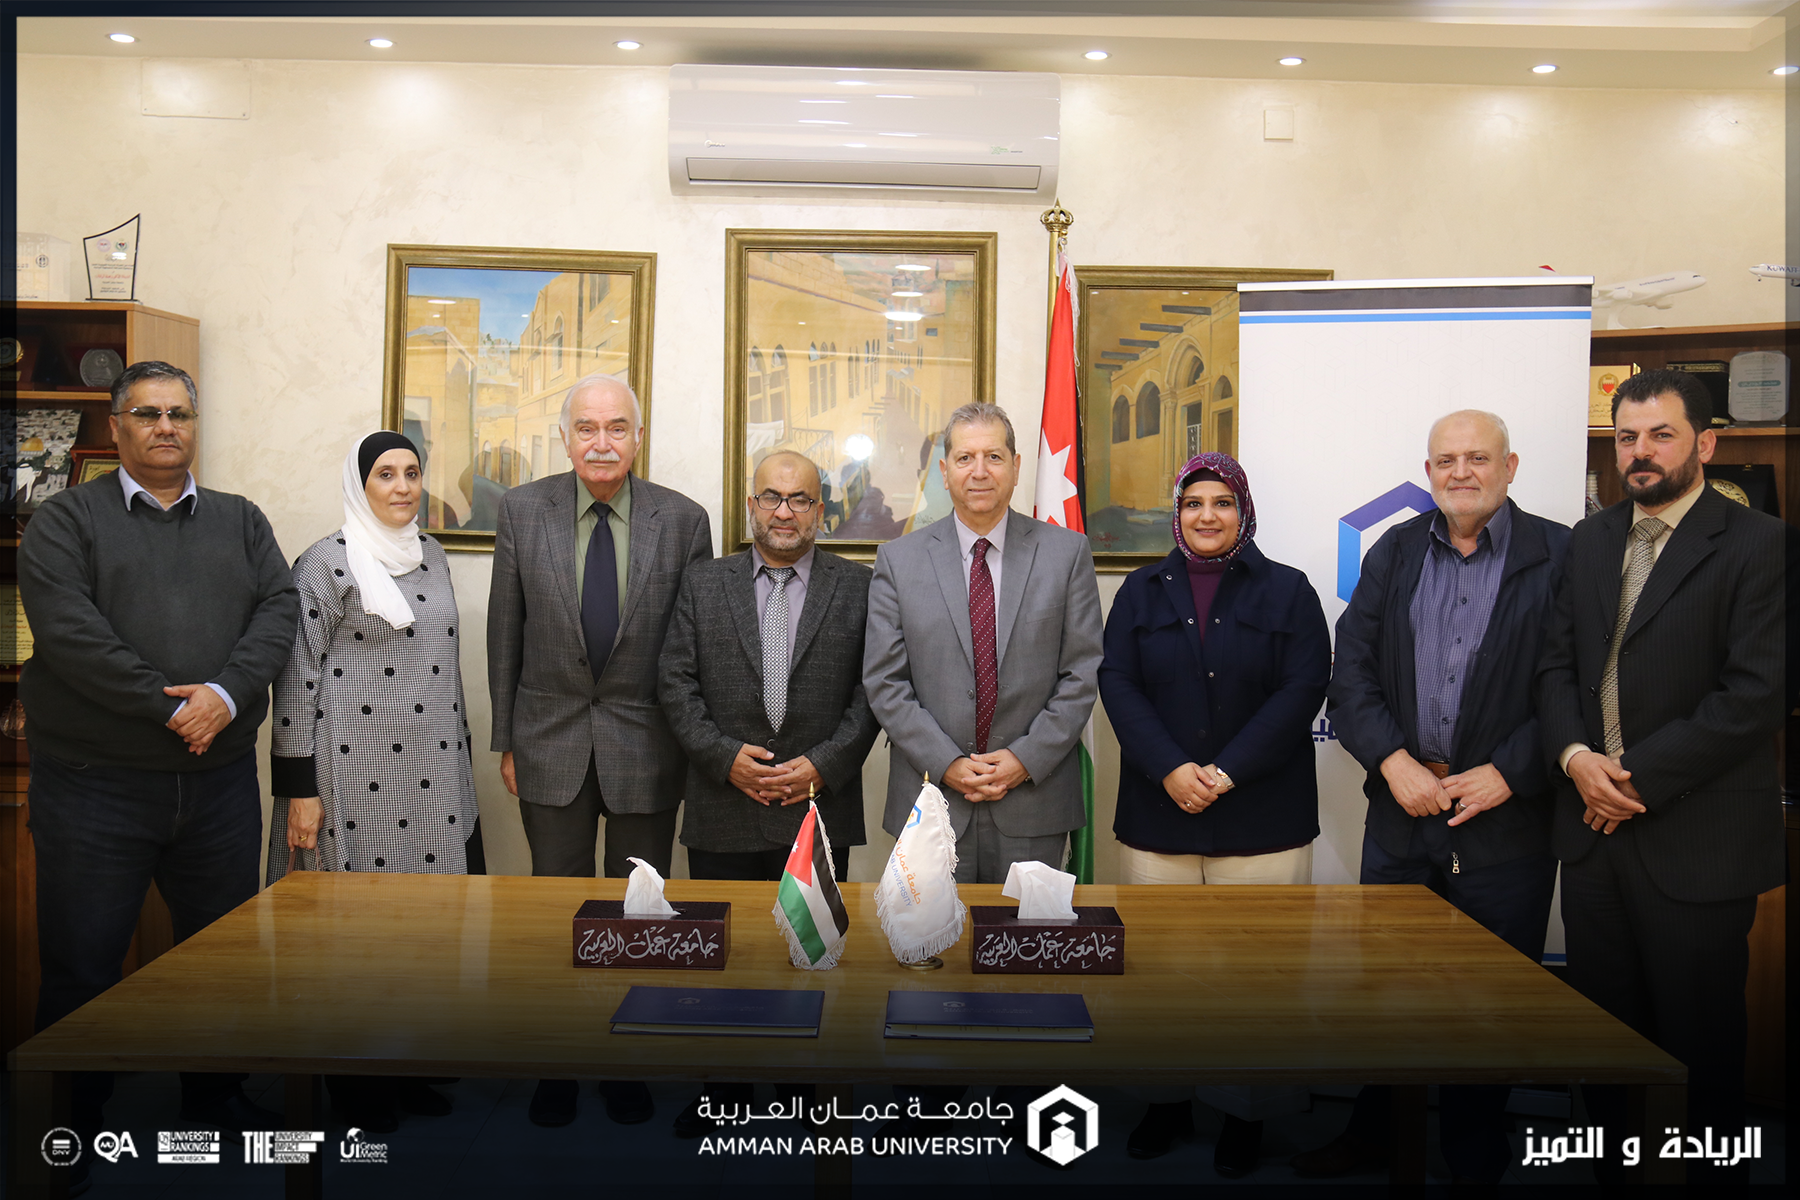 اتفاقية تعاون بين "عمّان العربية" واتحاد العاملين في وكالة الغوث الدولية "الاونروا" في الأردن